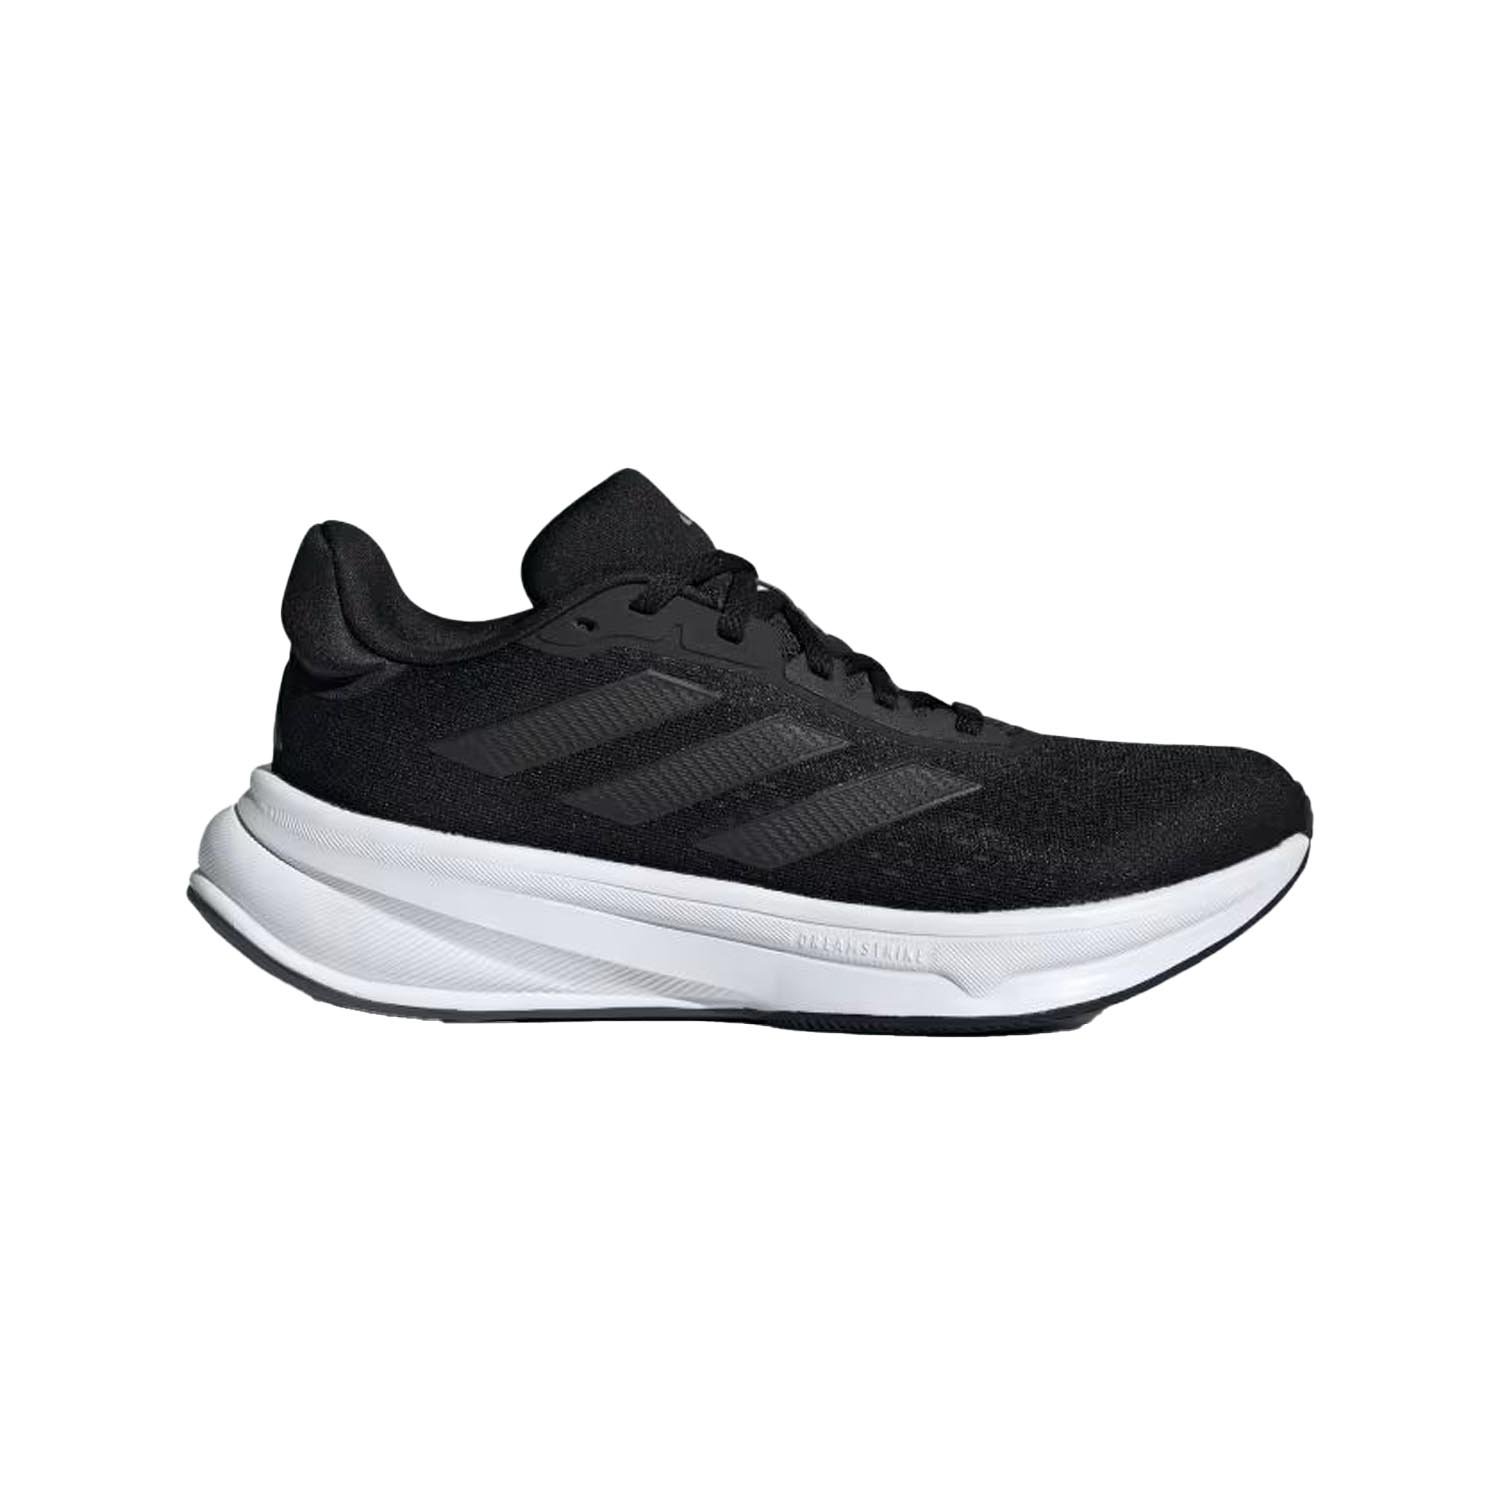 Adidas Response Super Kadın Koşu Ayakkabısı - Siyah - 1